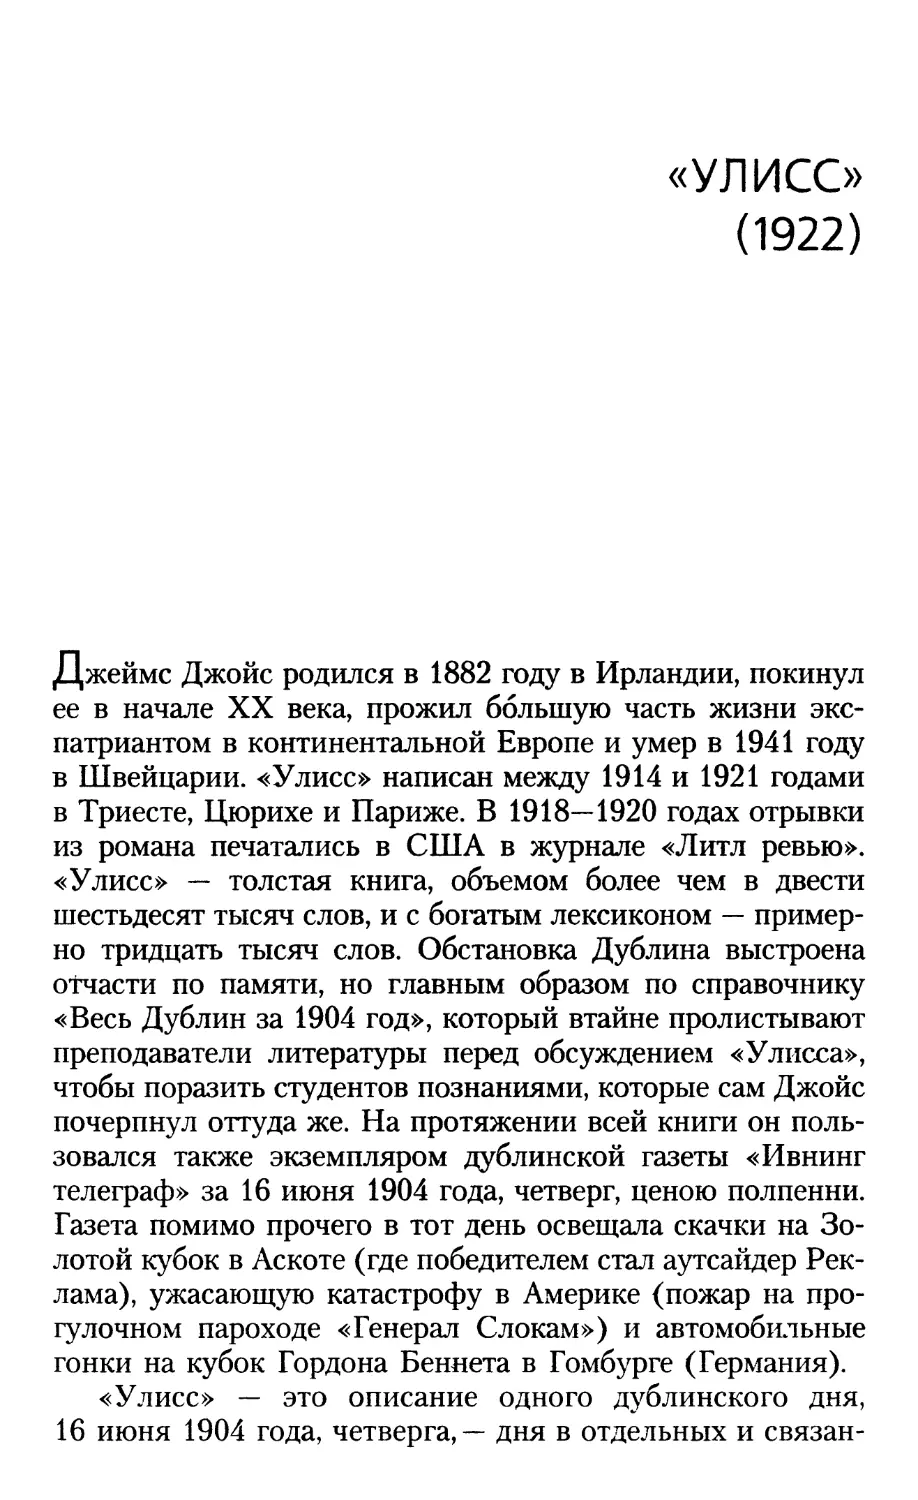 ДЖЕЙМС ДЖОЙС (1882-1941). «УЛИСС» (1922). Перевод Е. Касаткиной